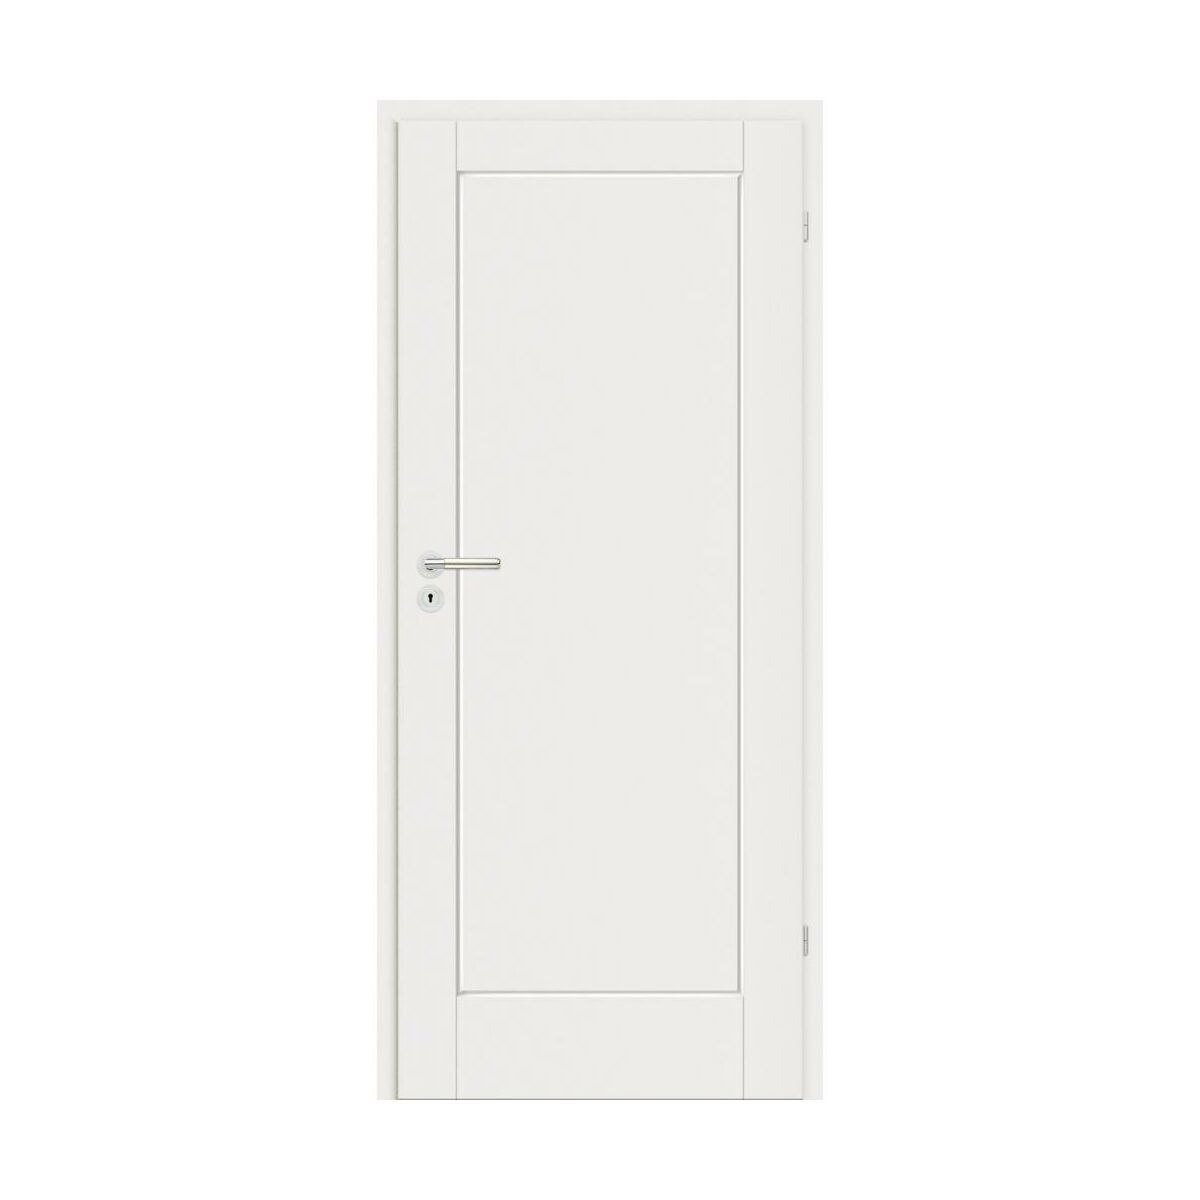 Drzwi wewnętrzne pełne Dota białe lakierowane 70 prawe Classen